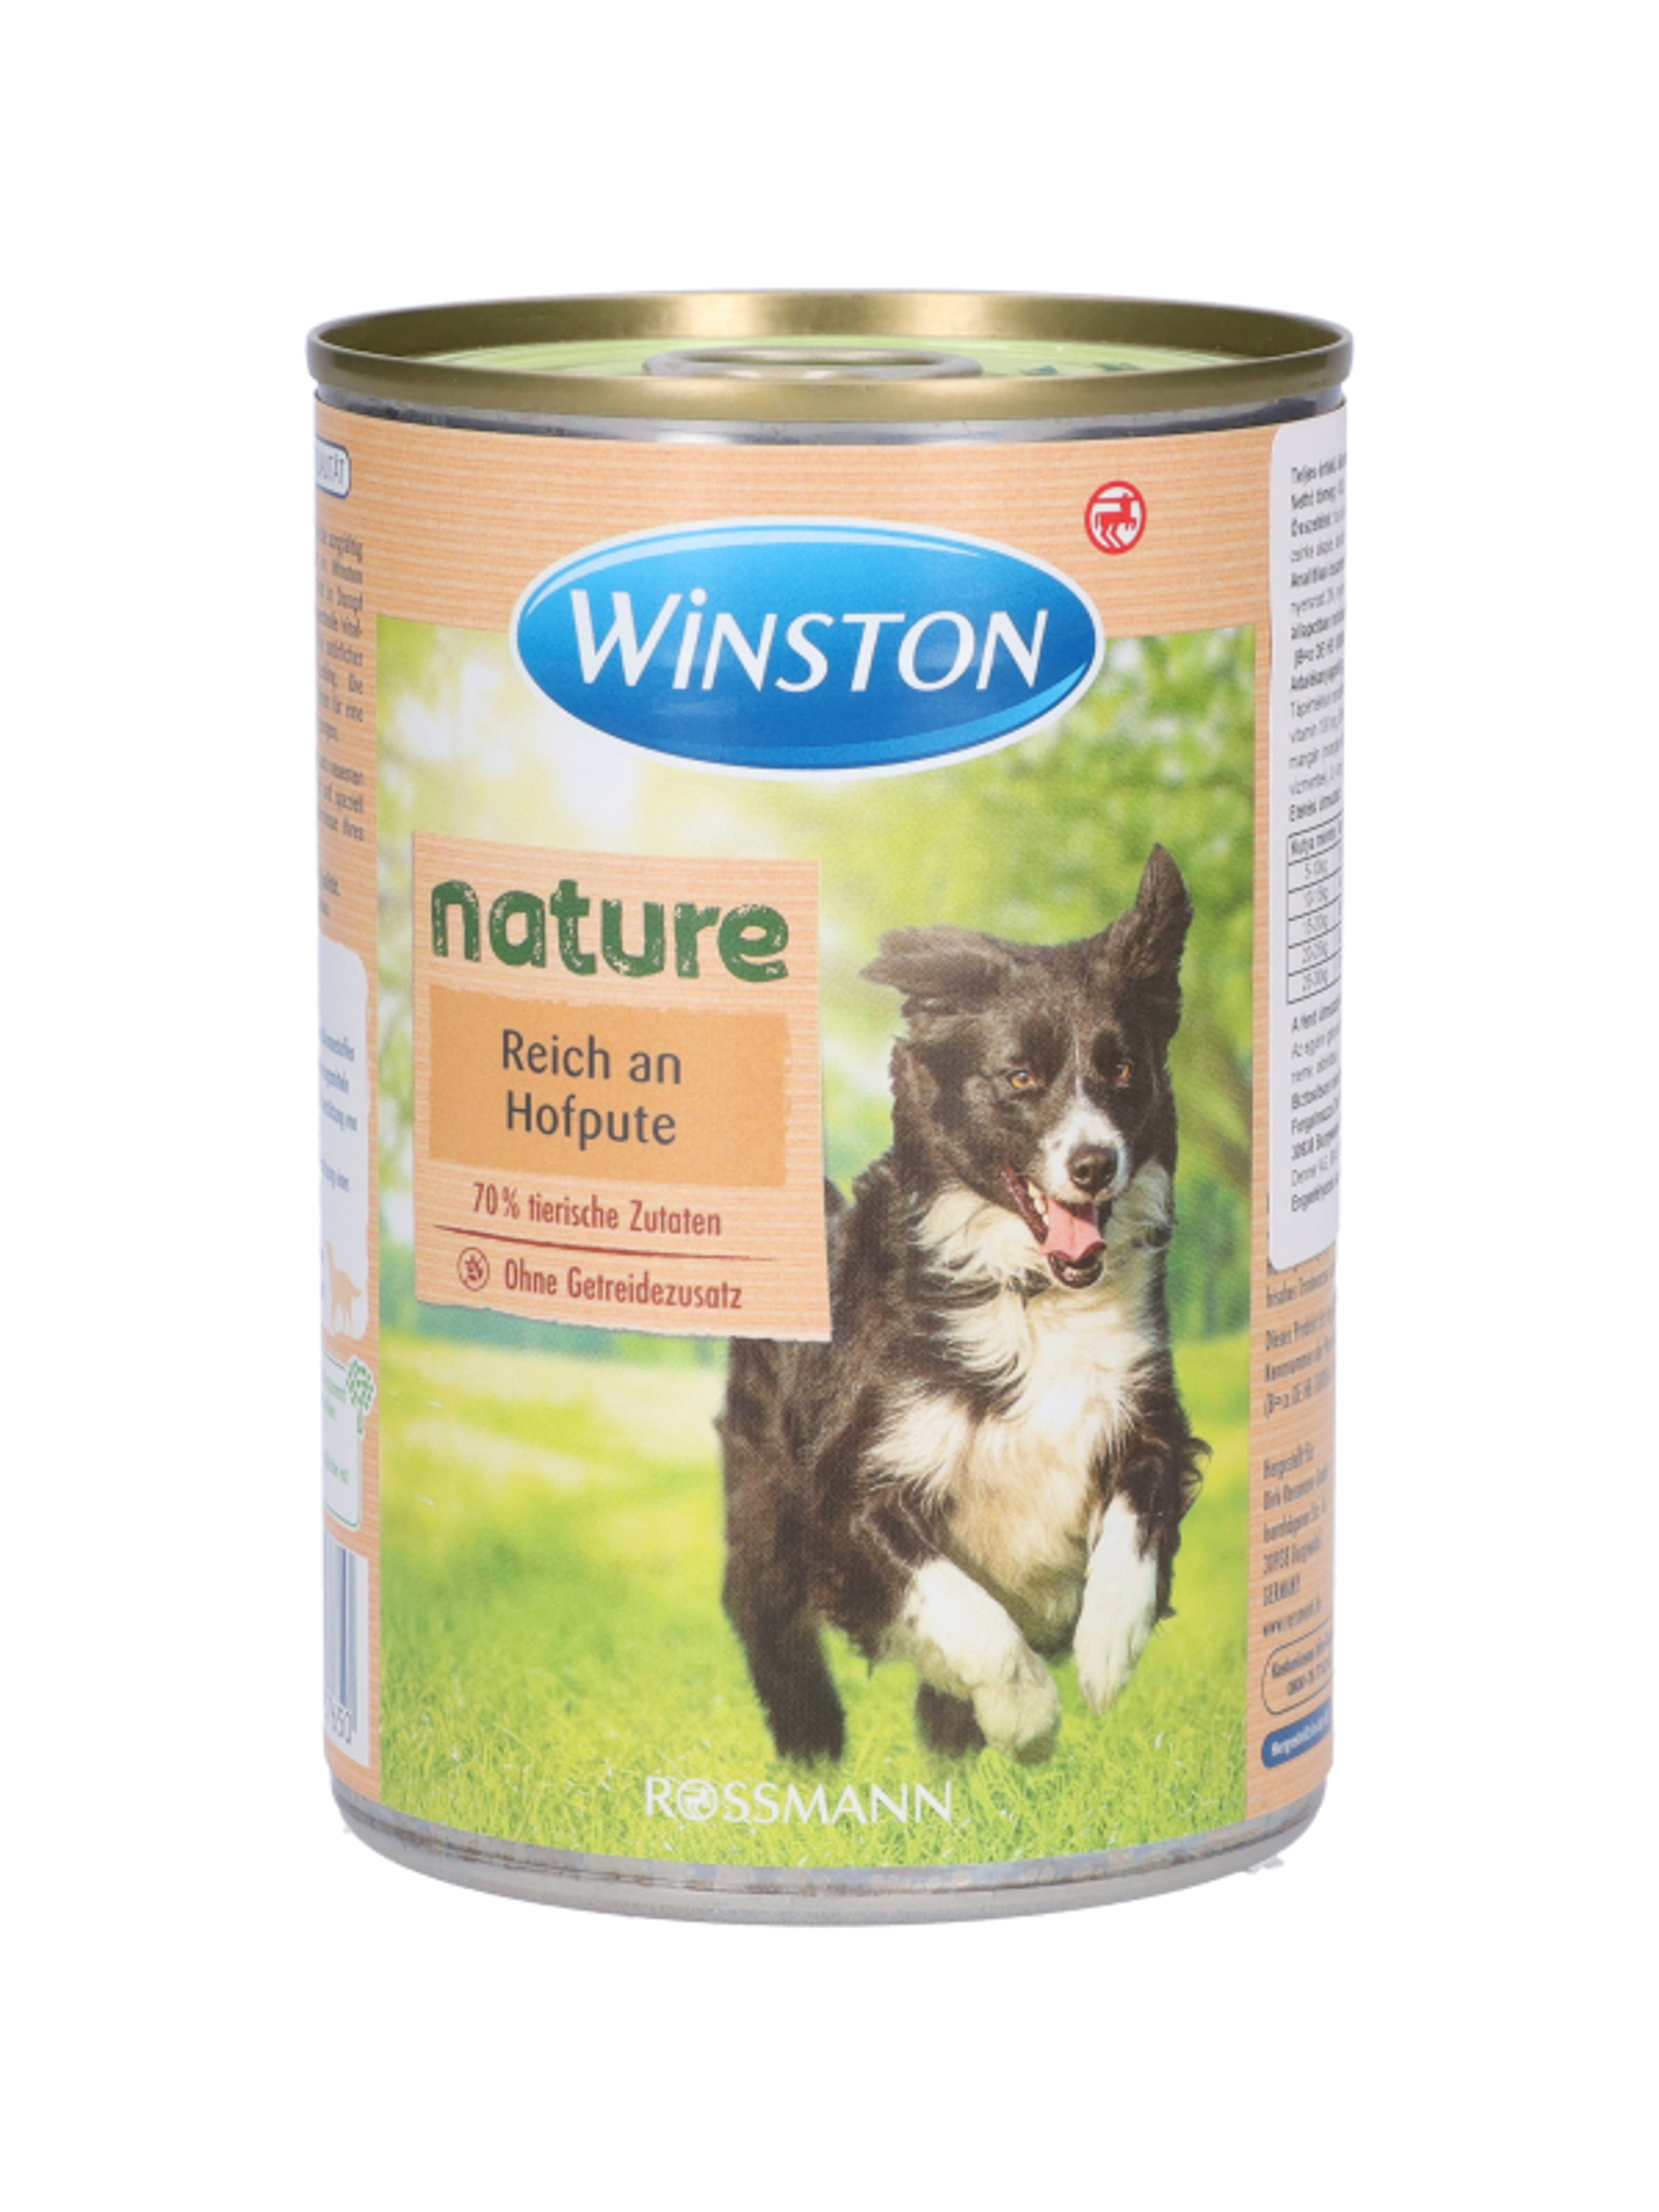 Winston nature tanyasi pulyka konzerv kutyáknak  - 400 g-3